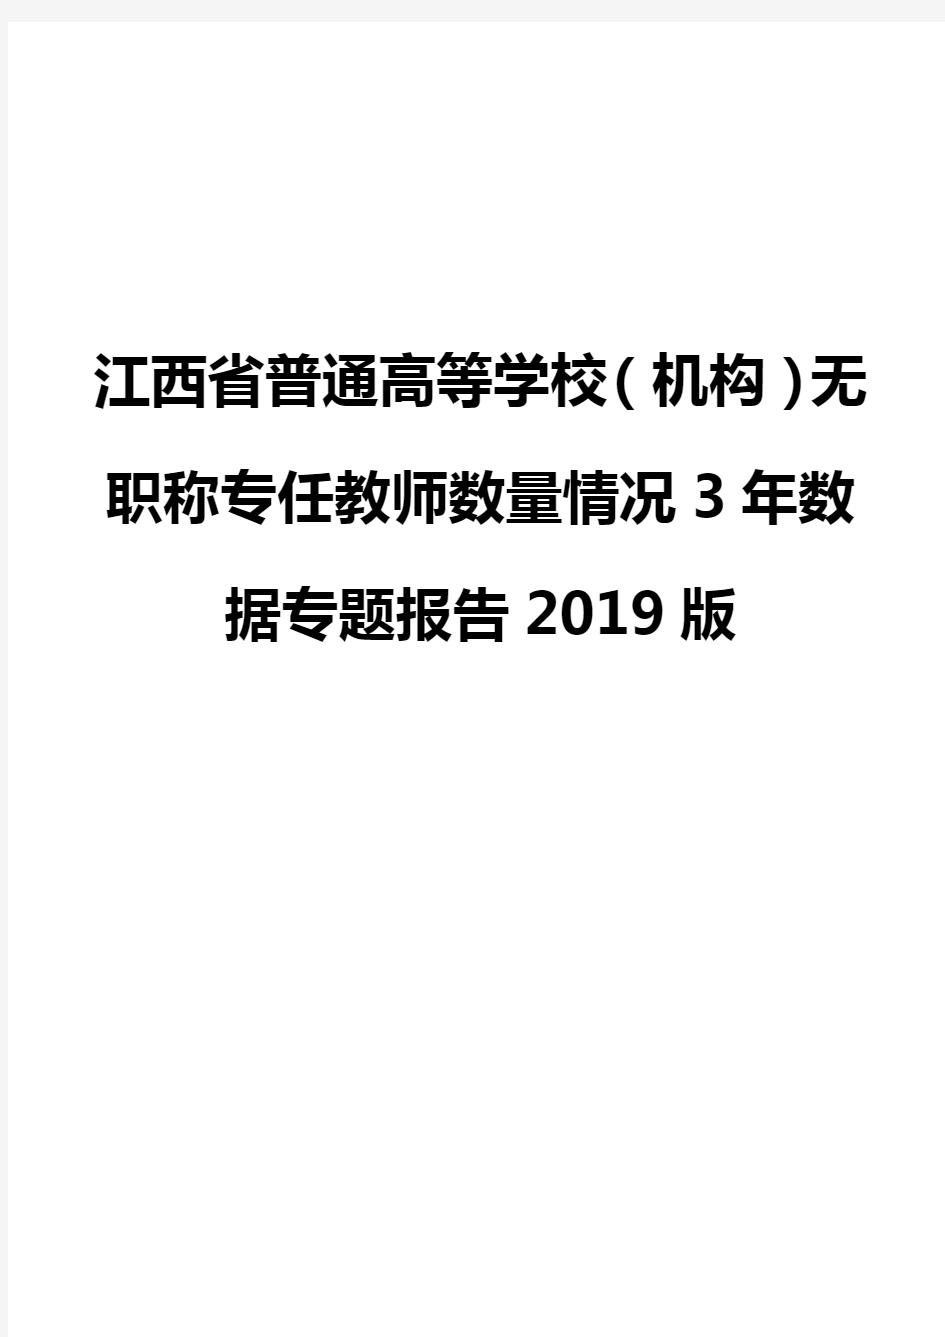 江西省普通高等学校(机构)无职称专任教师数量情况3年数据专题报告2019版